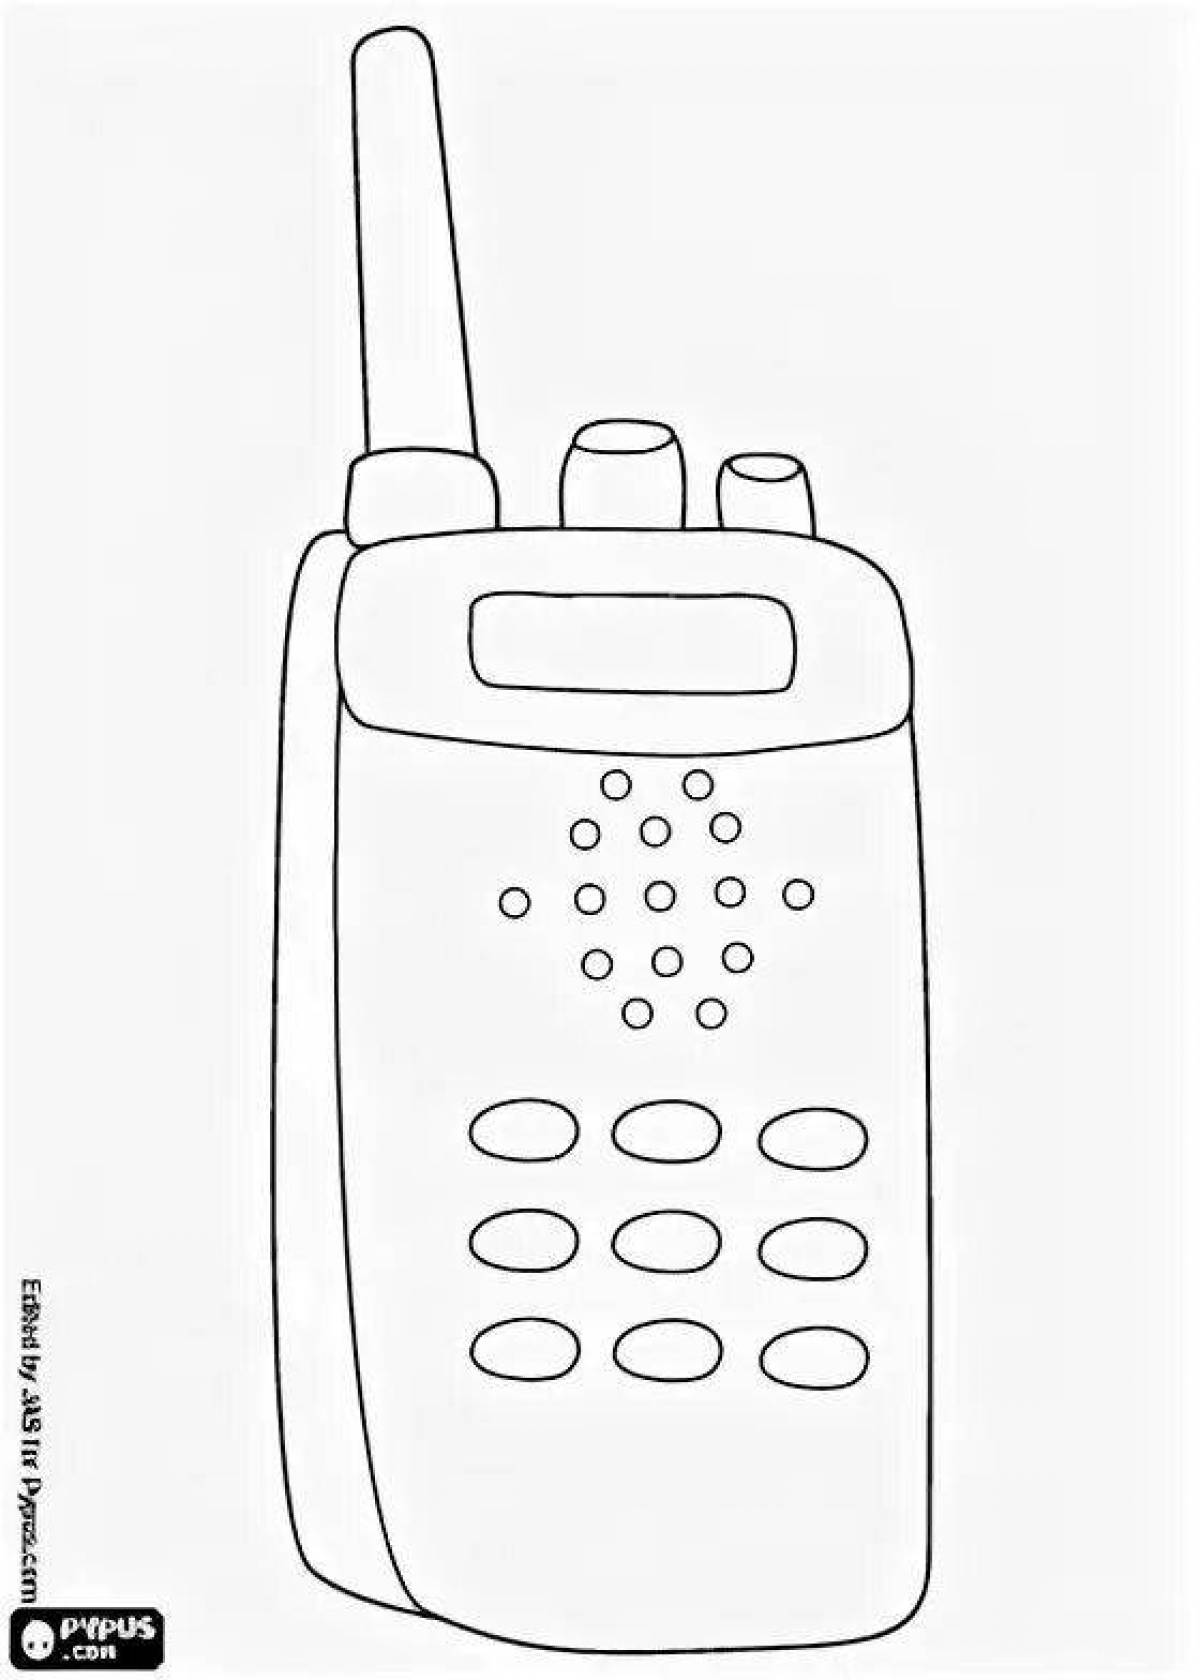 Brilliant walkie-talkie coloring